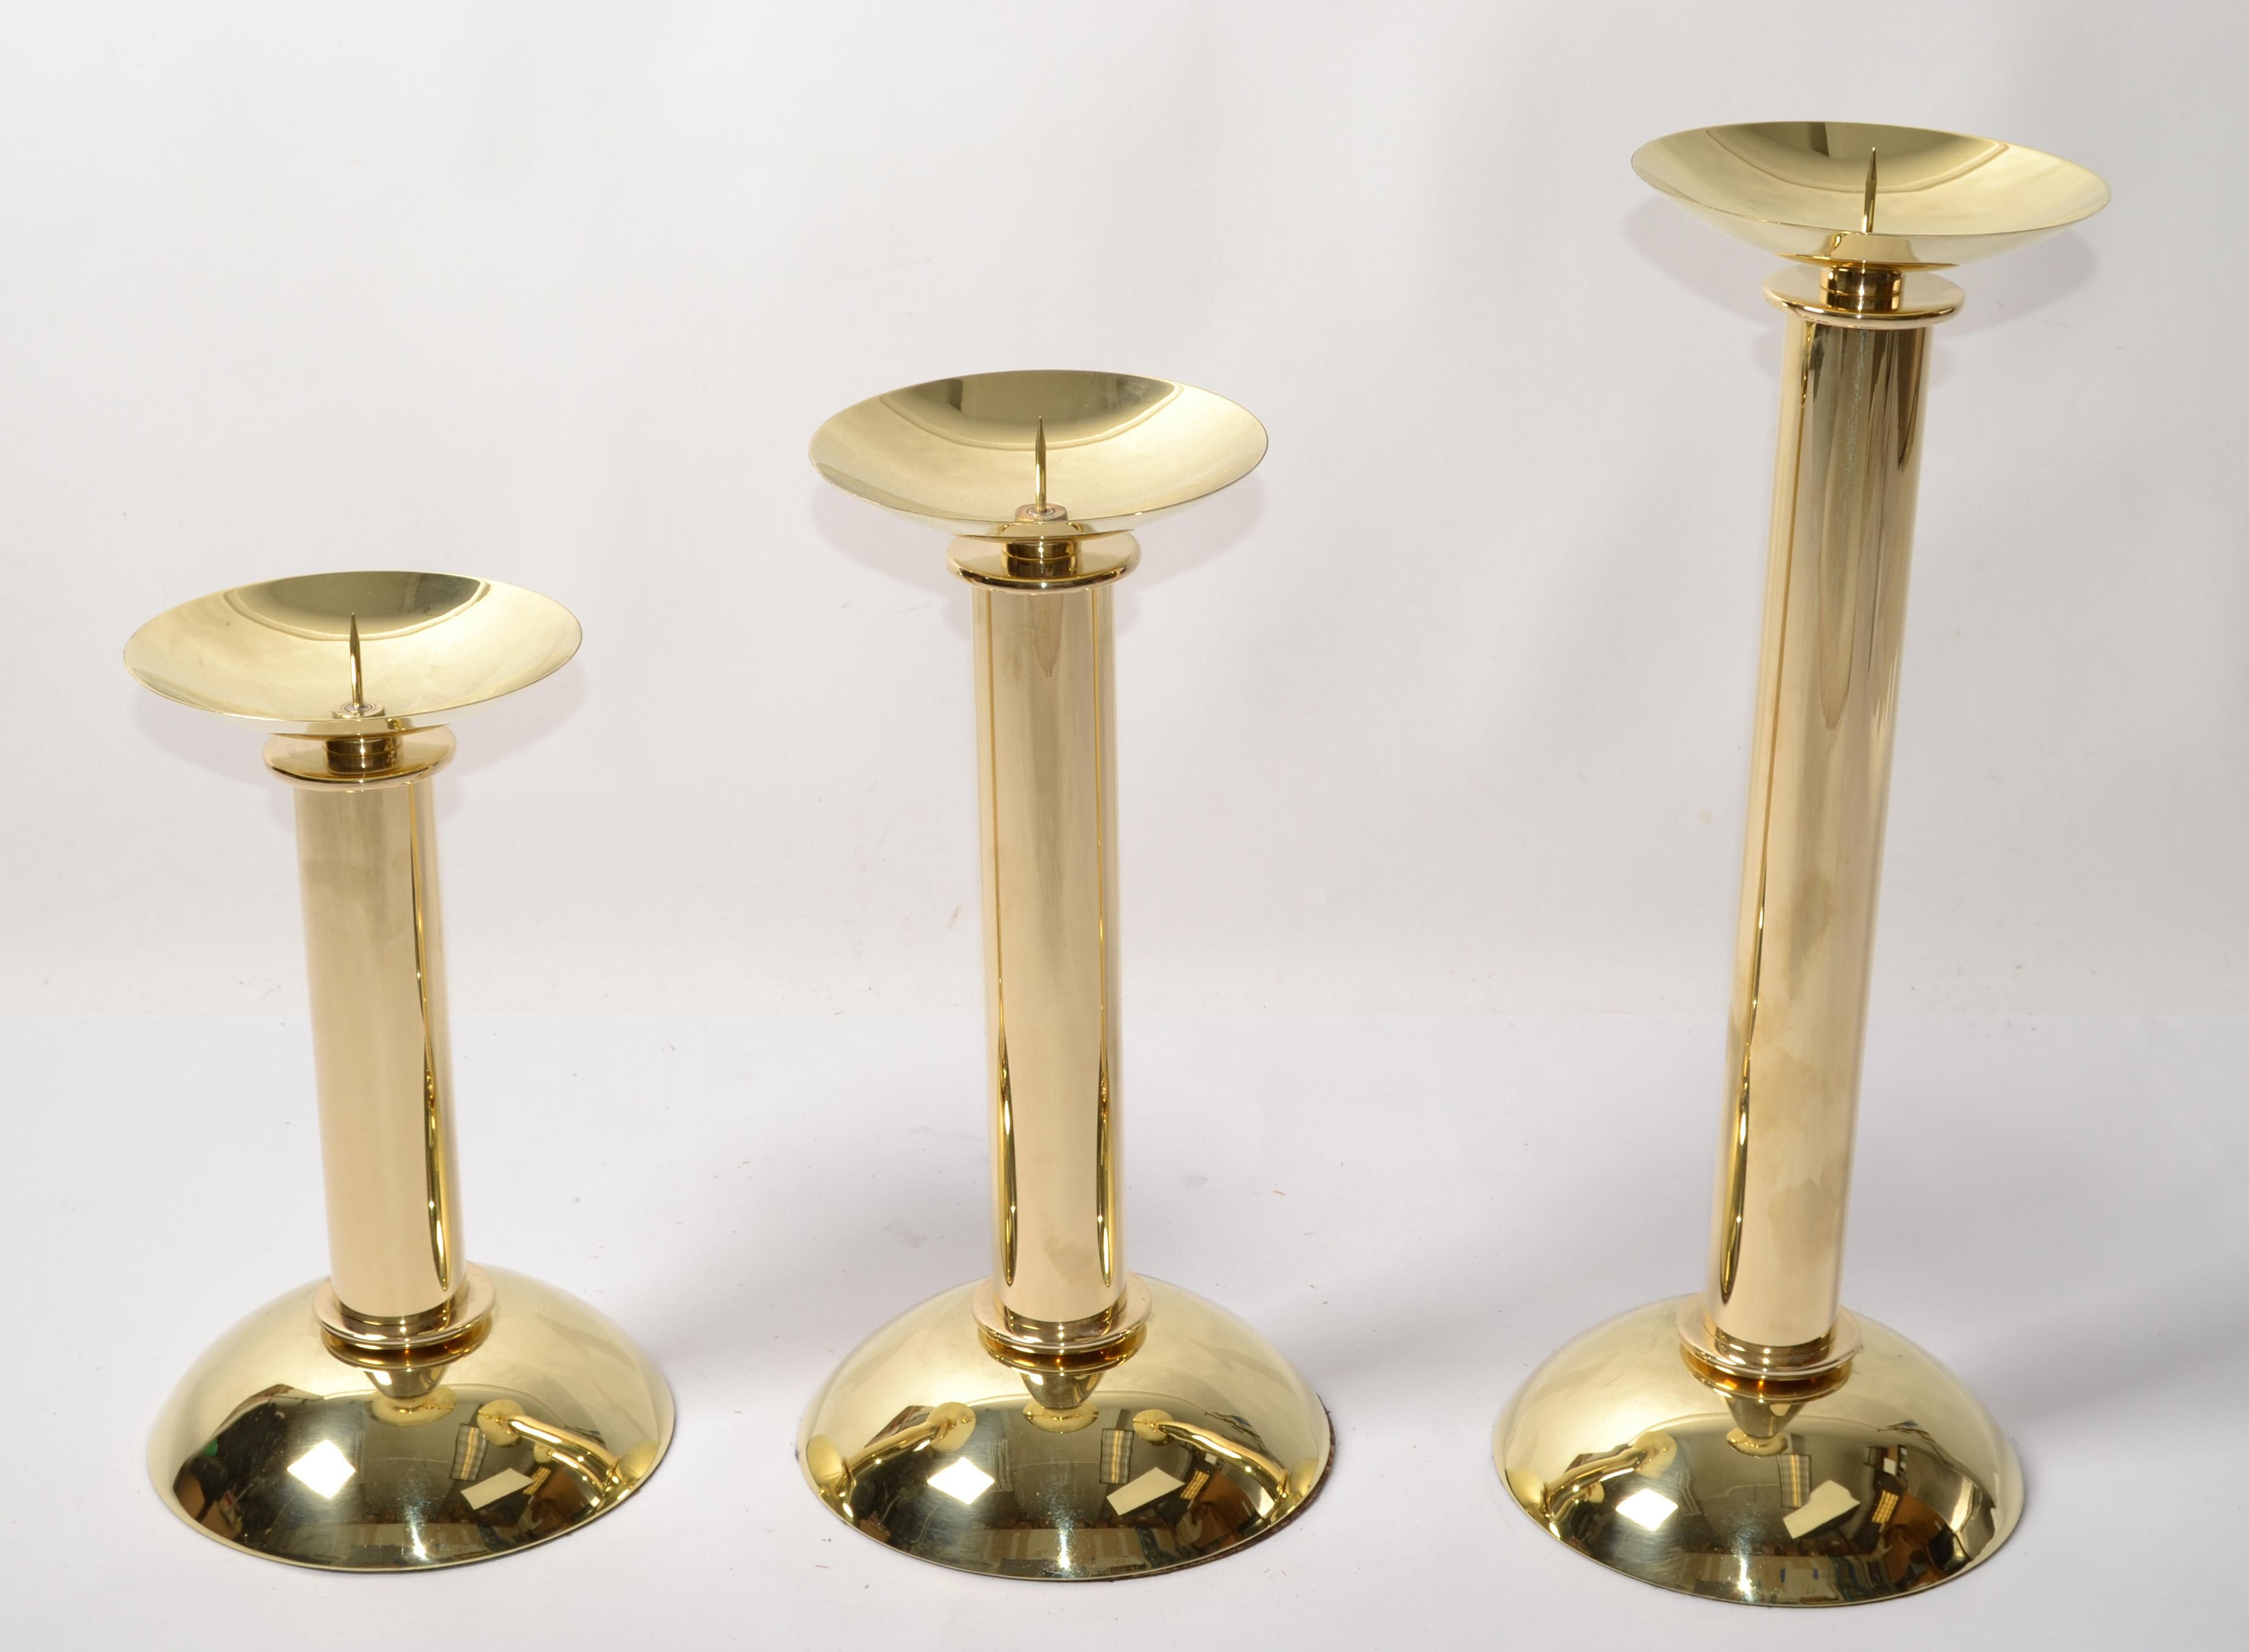 Diese 3 abgestuften Karl Springer LTD Kerzenleuchter aus poliertem Messing wurden von Karl Springer um 1985 in Amerika entworfen.
Sie bestehen aus einer konkaven Basis und einer konvexen Spitze, die durch einen zylindrischen Körper verbunden sind,